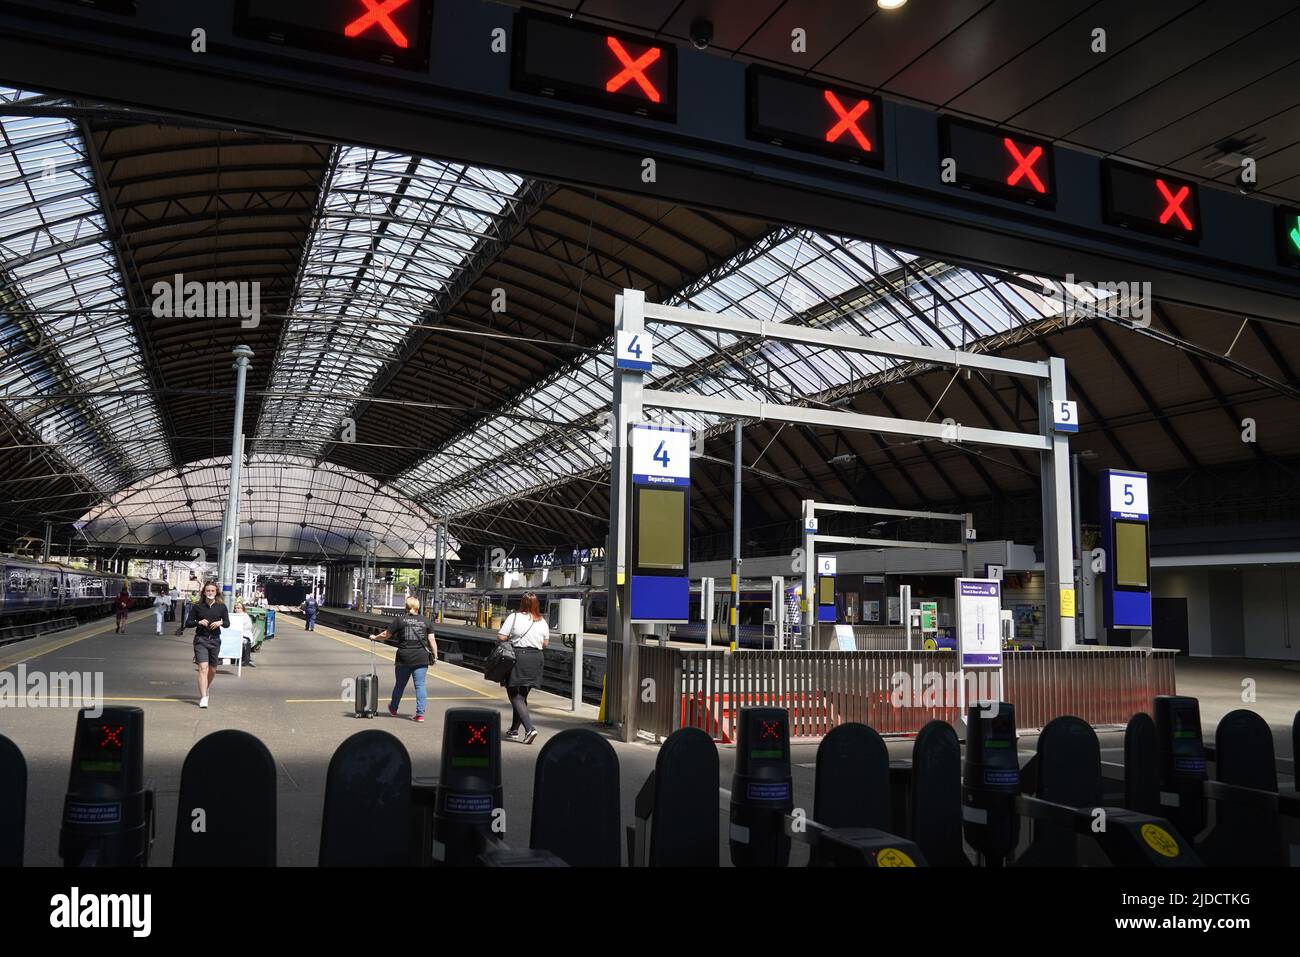 Barriere per i biglietti alla stazione di Glasgow Queen Street. I treni saranno interrompiti a causa di un'azione industriale, in quanto la RMT ha annunciato un'azione industriale il 21, 23 e 25 giugno. Data foto: Lunedì 20 giugno 2022. Foto Stock